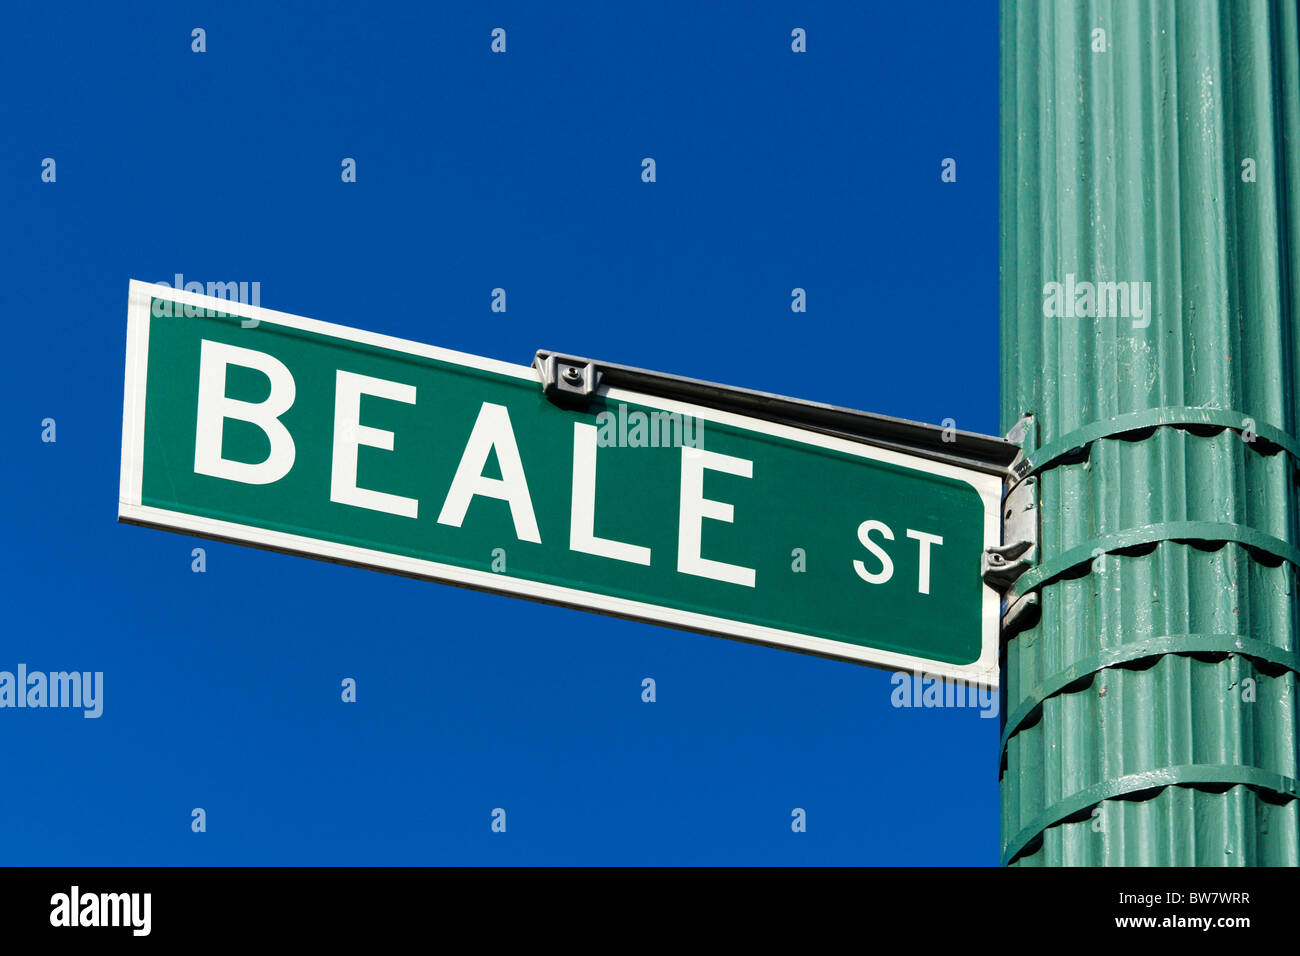 Plaque de rue, Beale Street, Memphis, Tennessee, États-Unis Banque D'Images